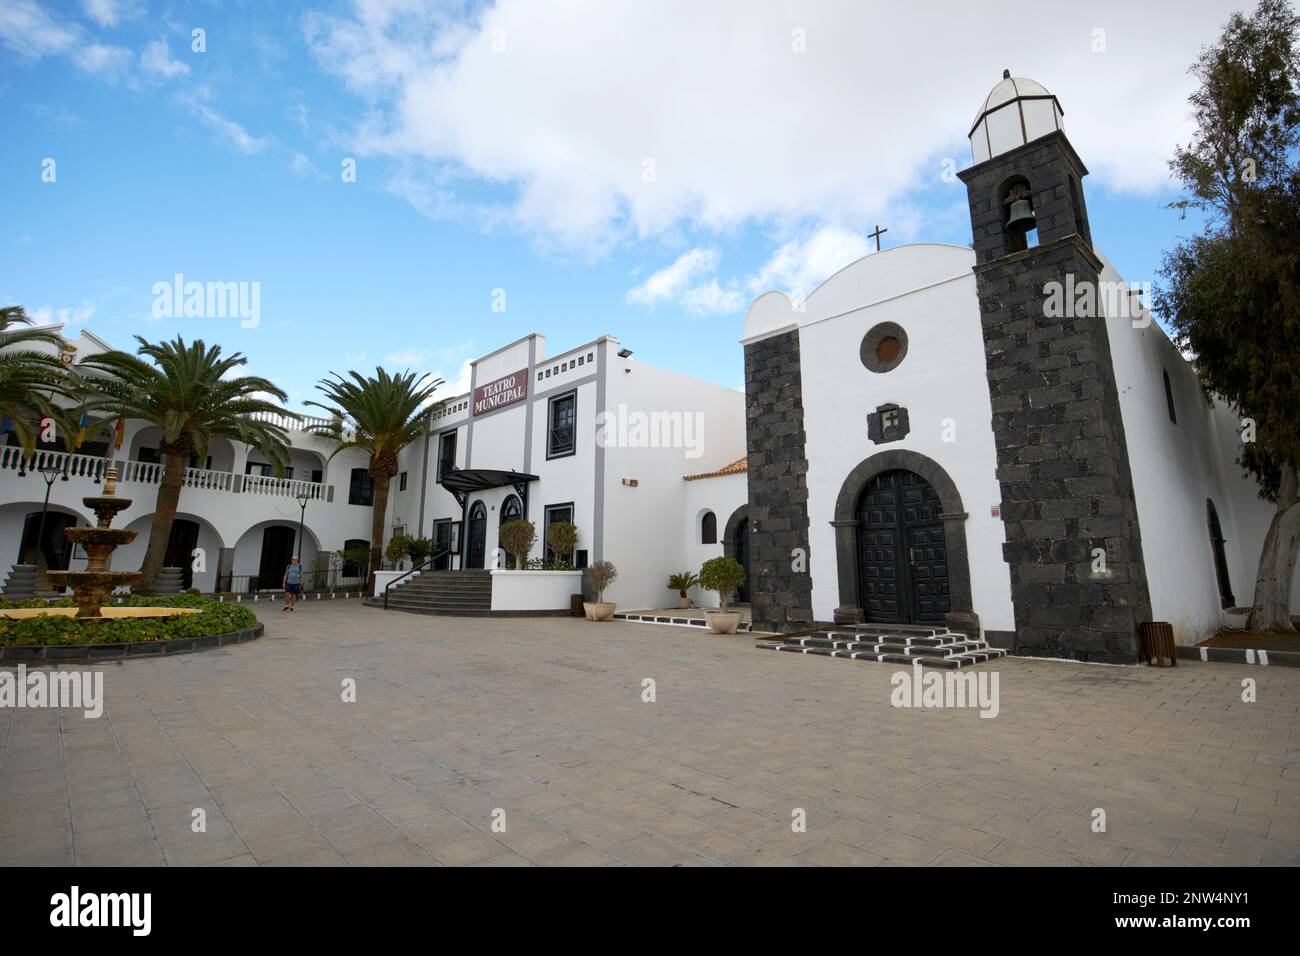 San bartolome church San Bartolome Lanzarote, Canary Islands, Spain Stock Photo